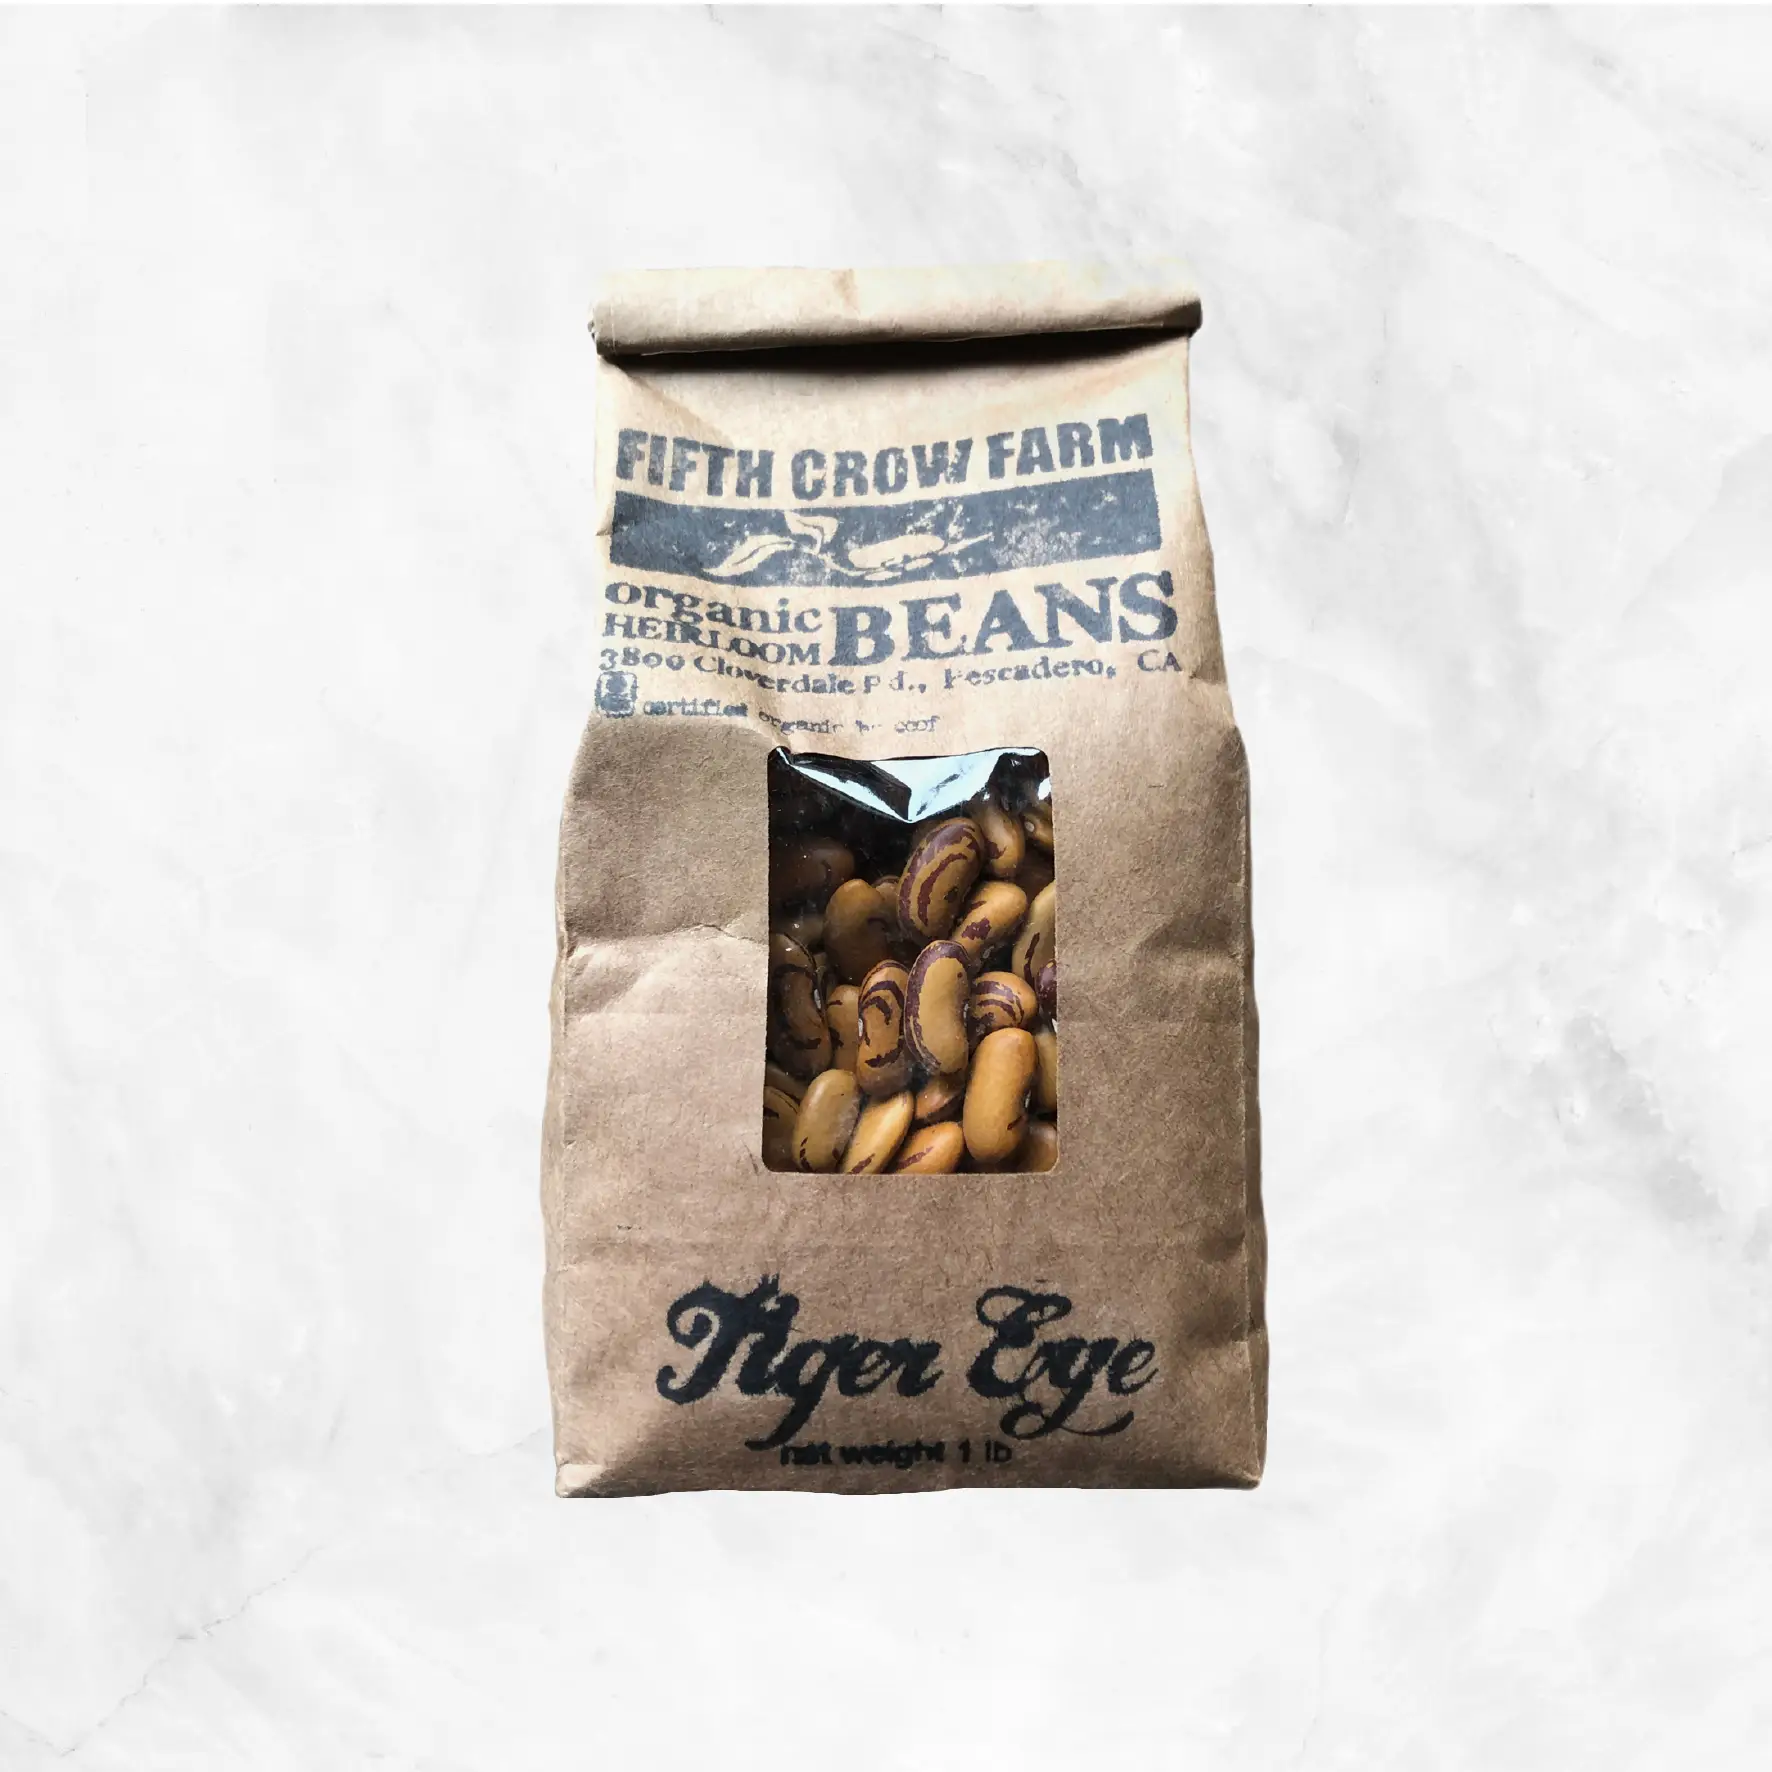 Tiger Eye Dry Beans